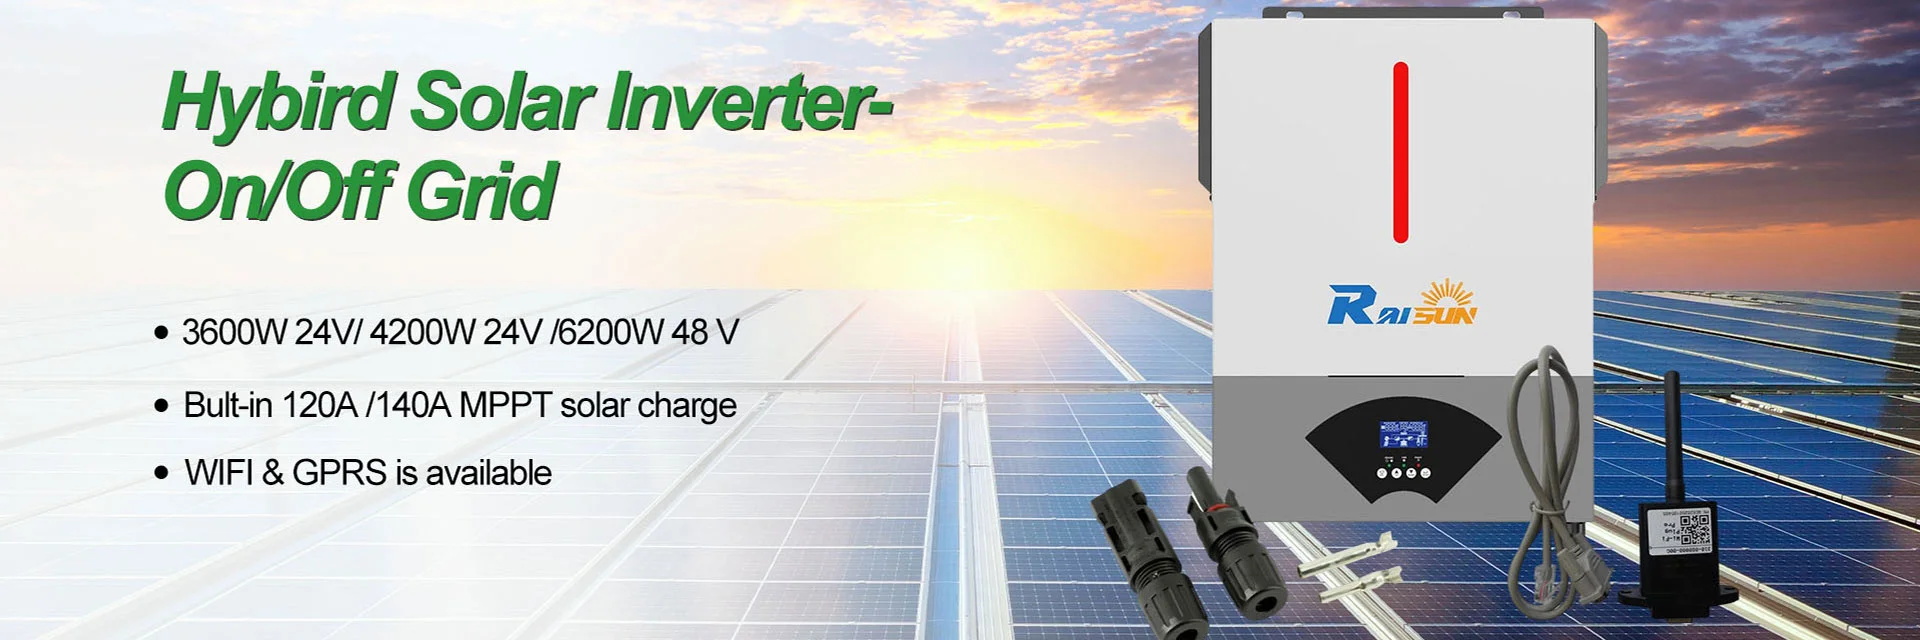 Types of Hybrid Solar Inverter for Sale